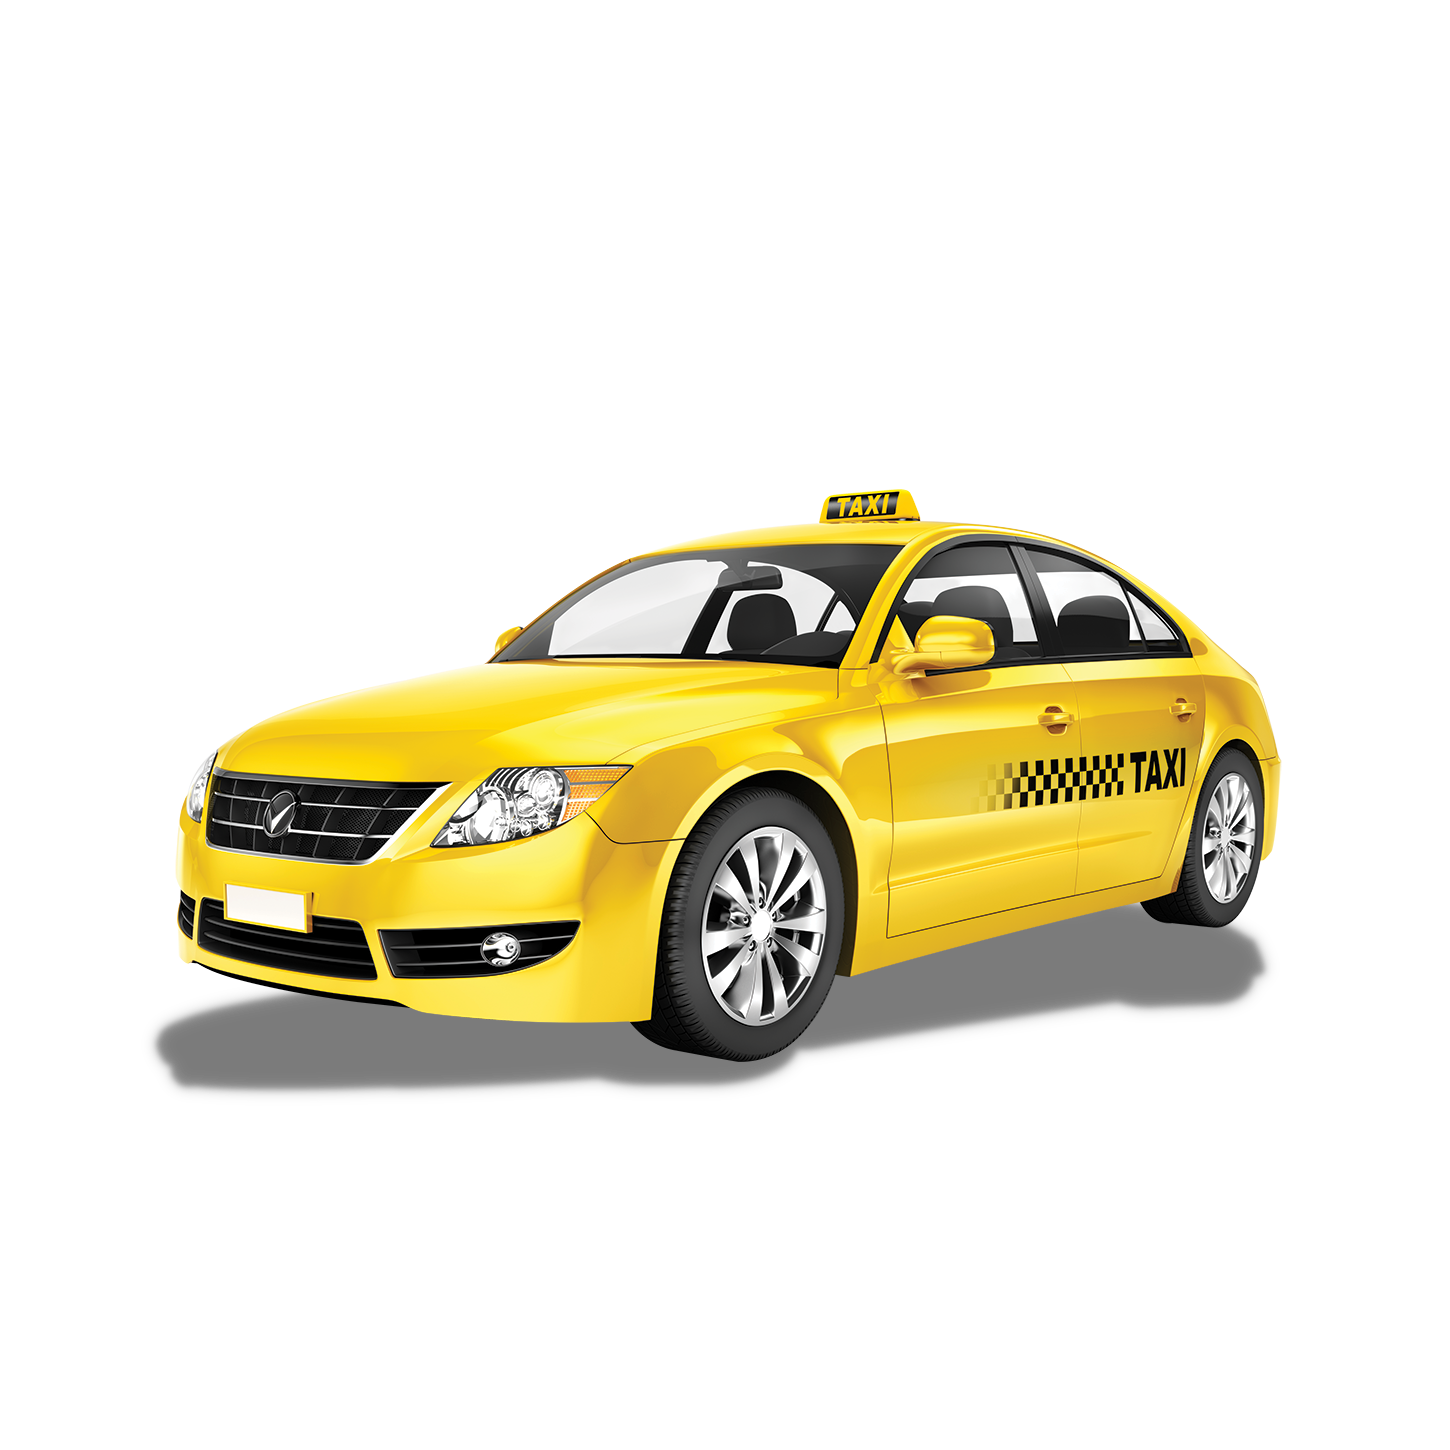 Такси арск. Машина "такси". Автомобиль «такси». Vfibyf nfrfcb. Такси эконом.